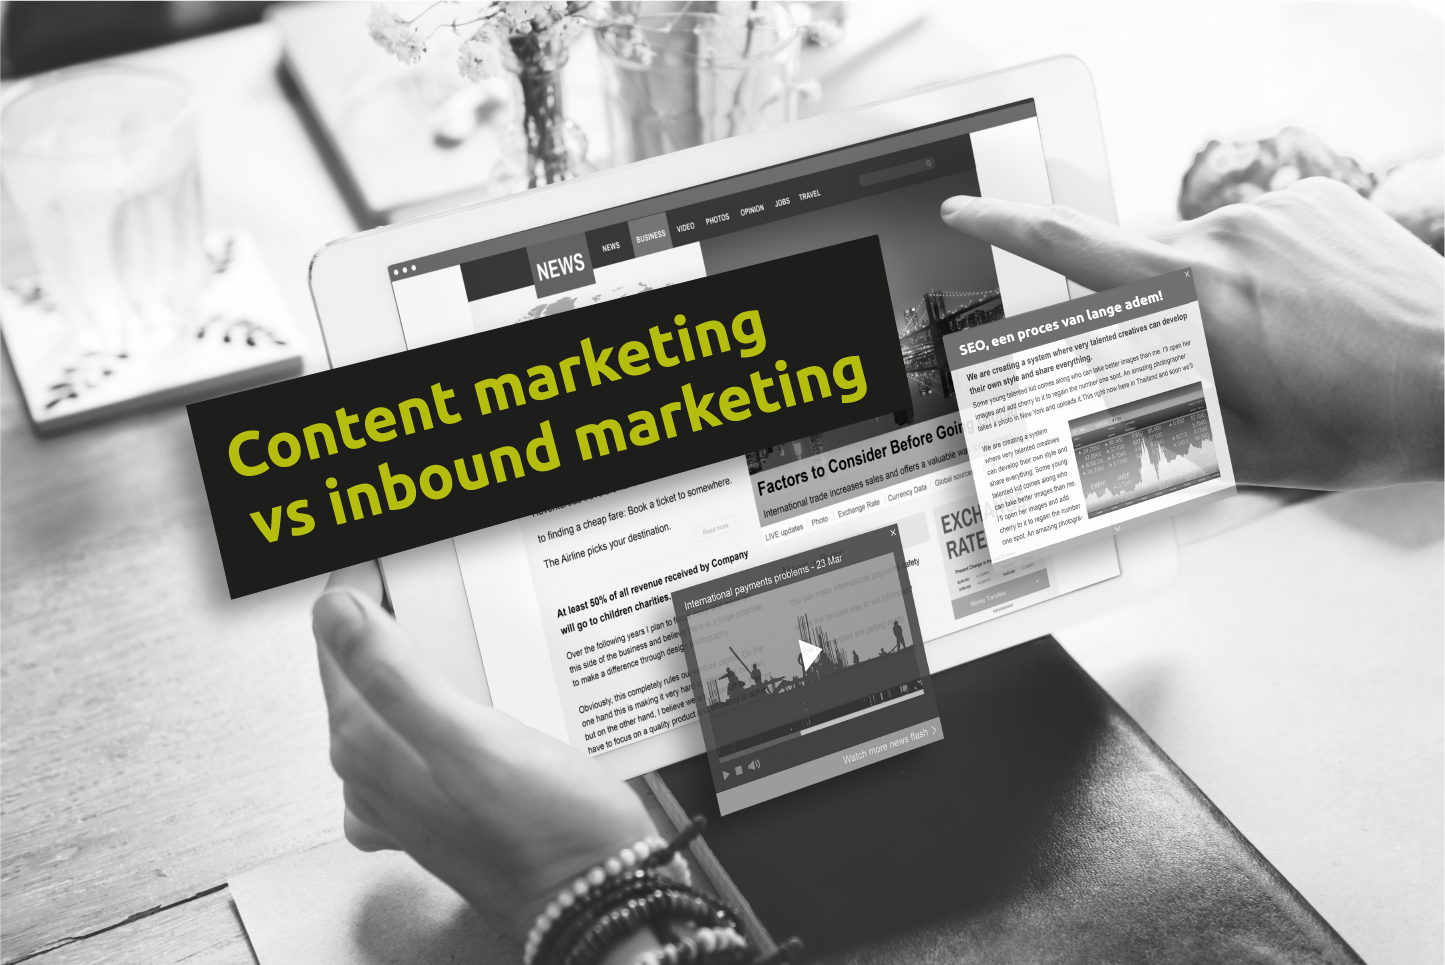 Content marketing vs inbound marketing